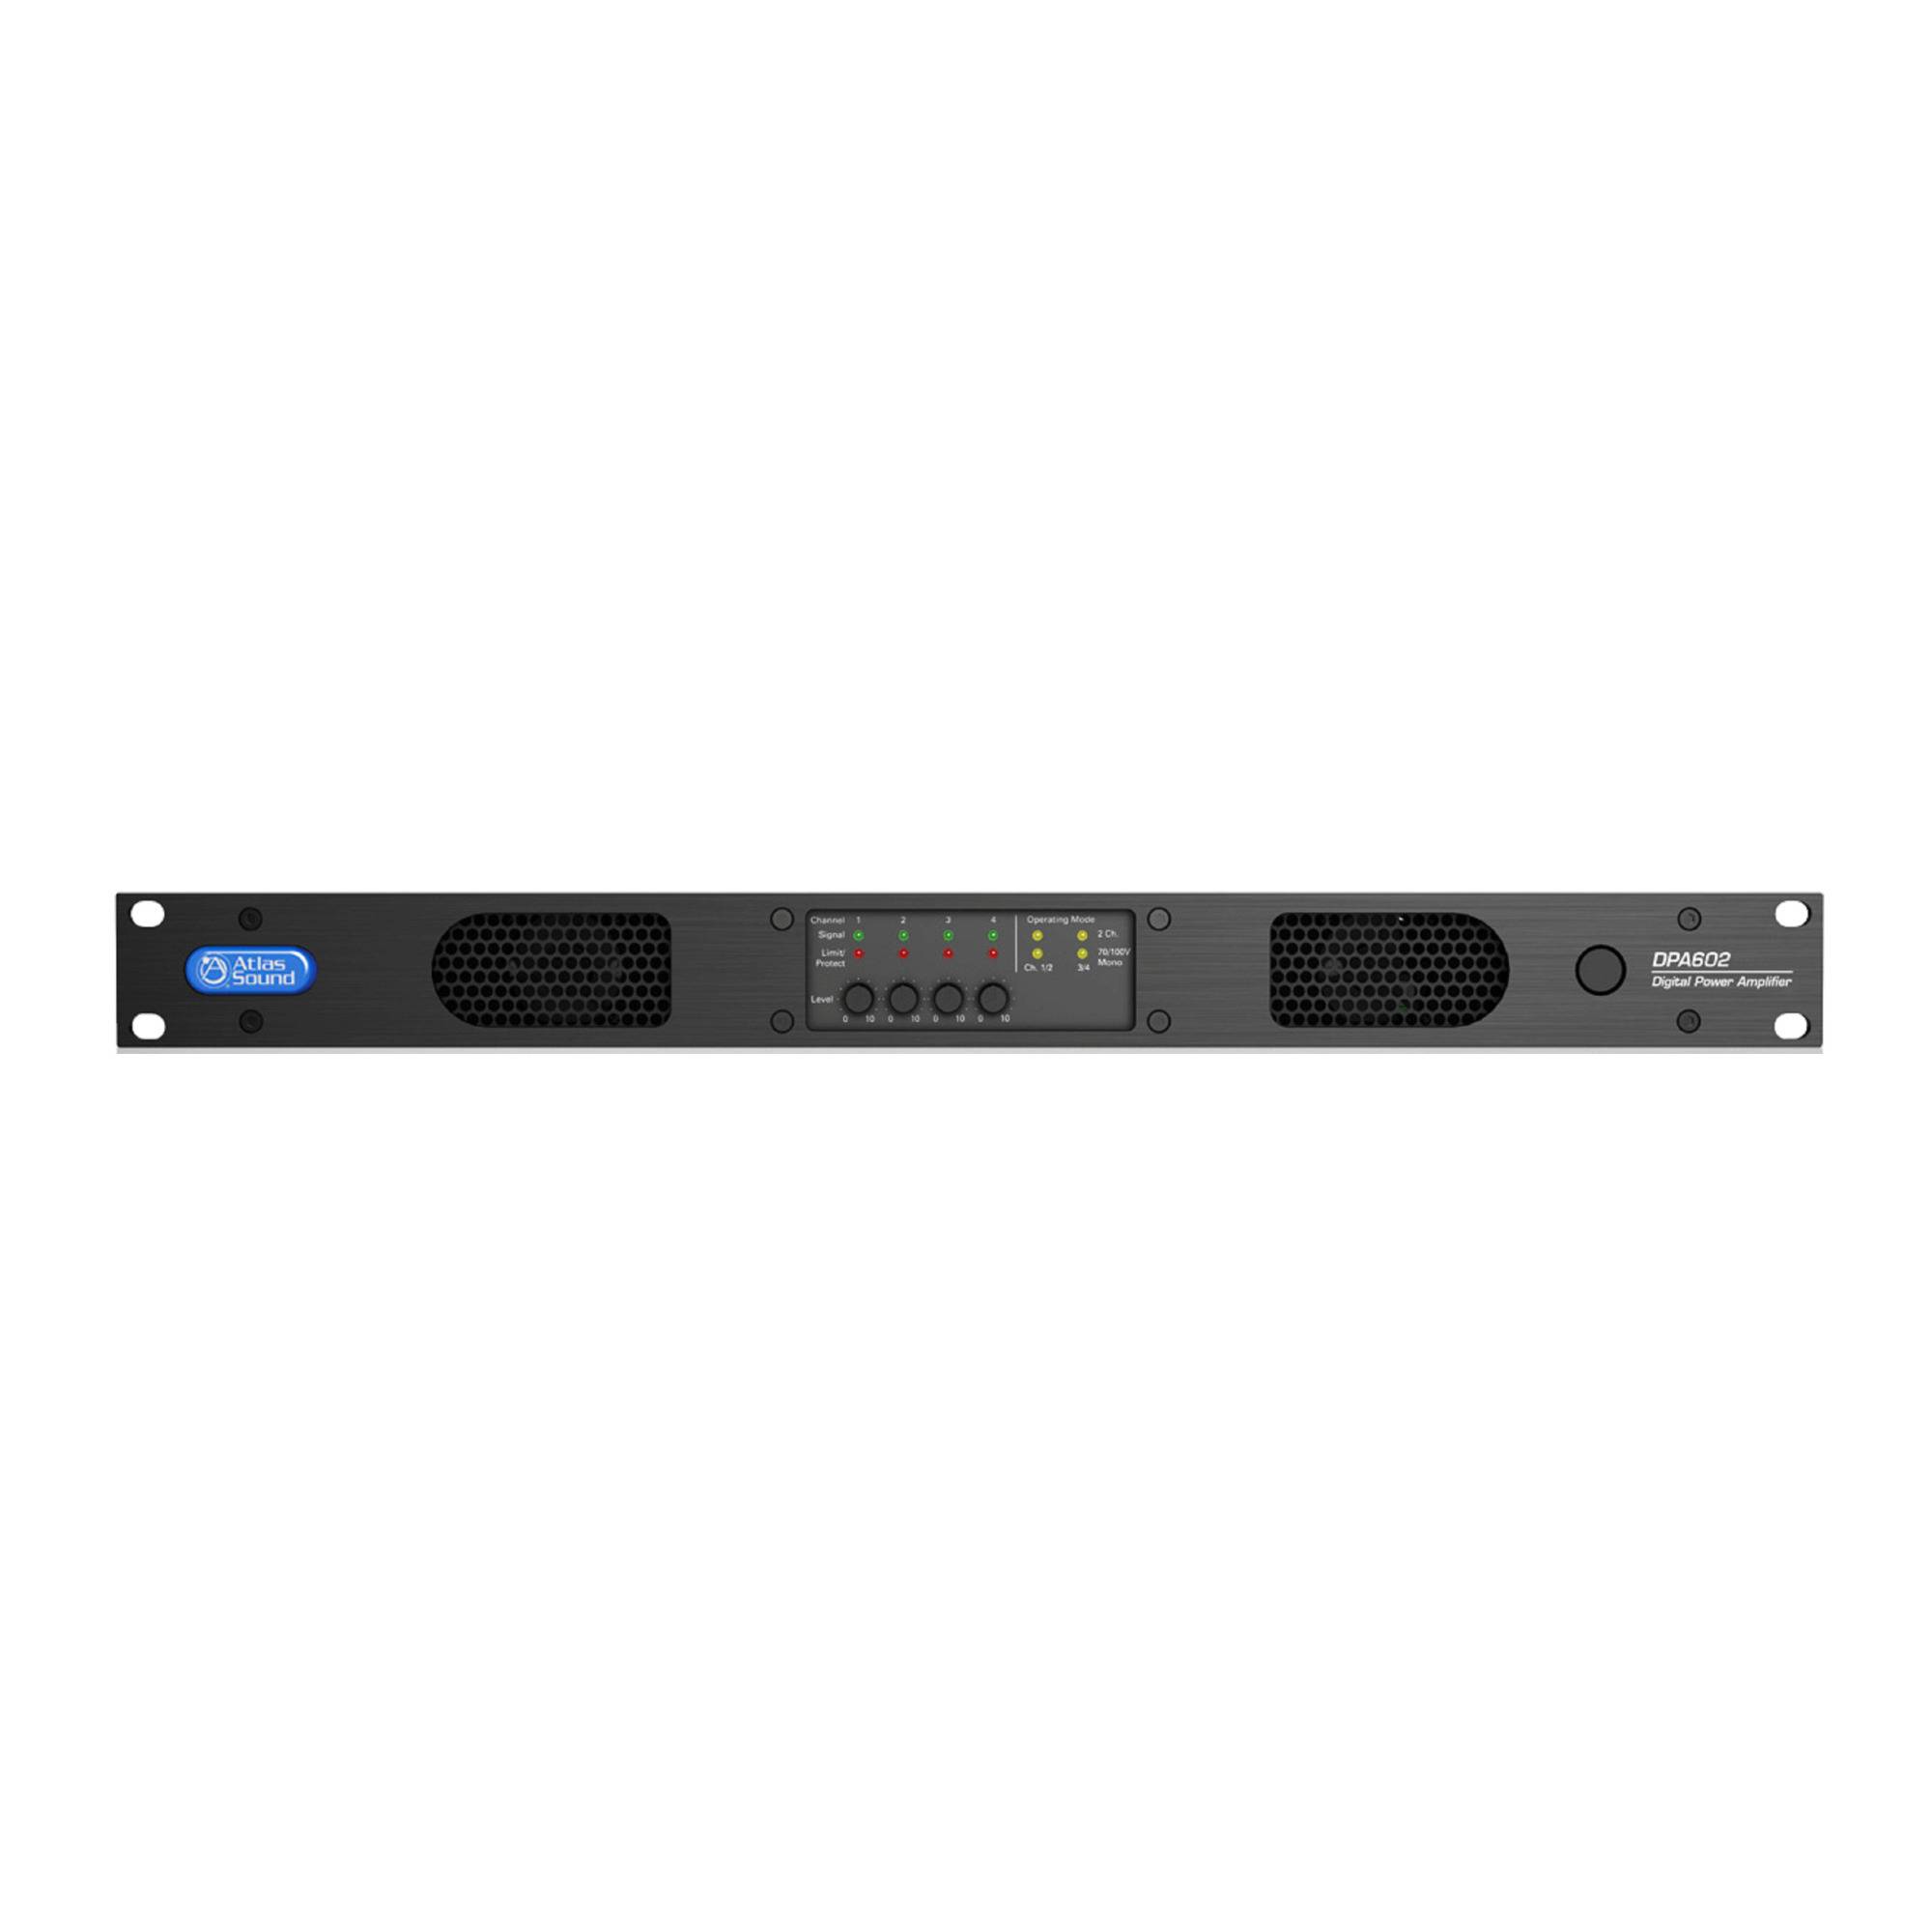 AtlasIED Networkable Multi-Channel Power Amplifier with Optional Dante Network Audio (600 Watt)